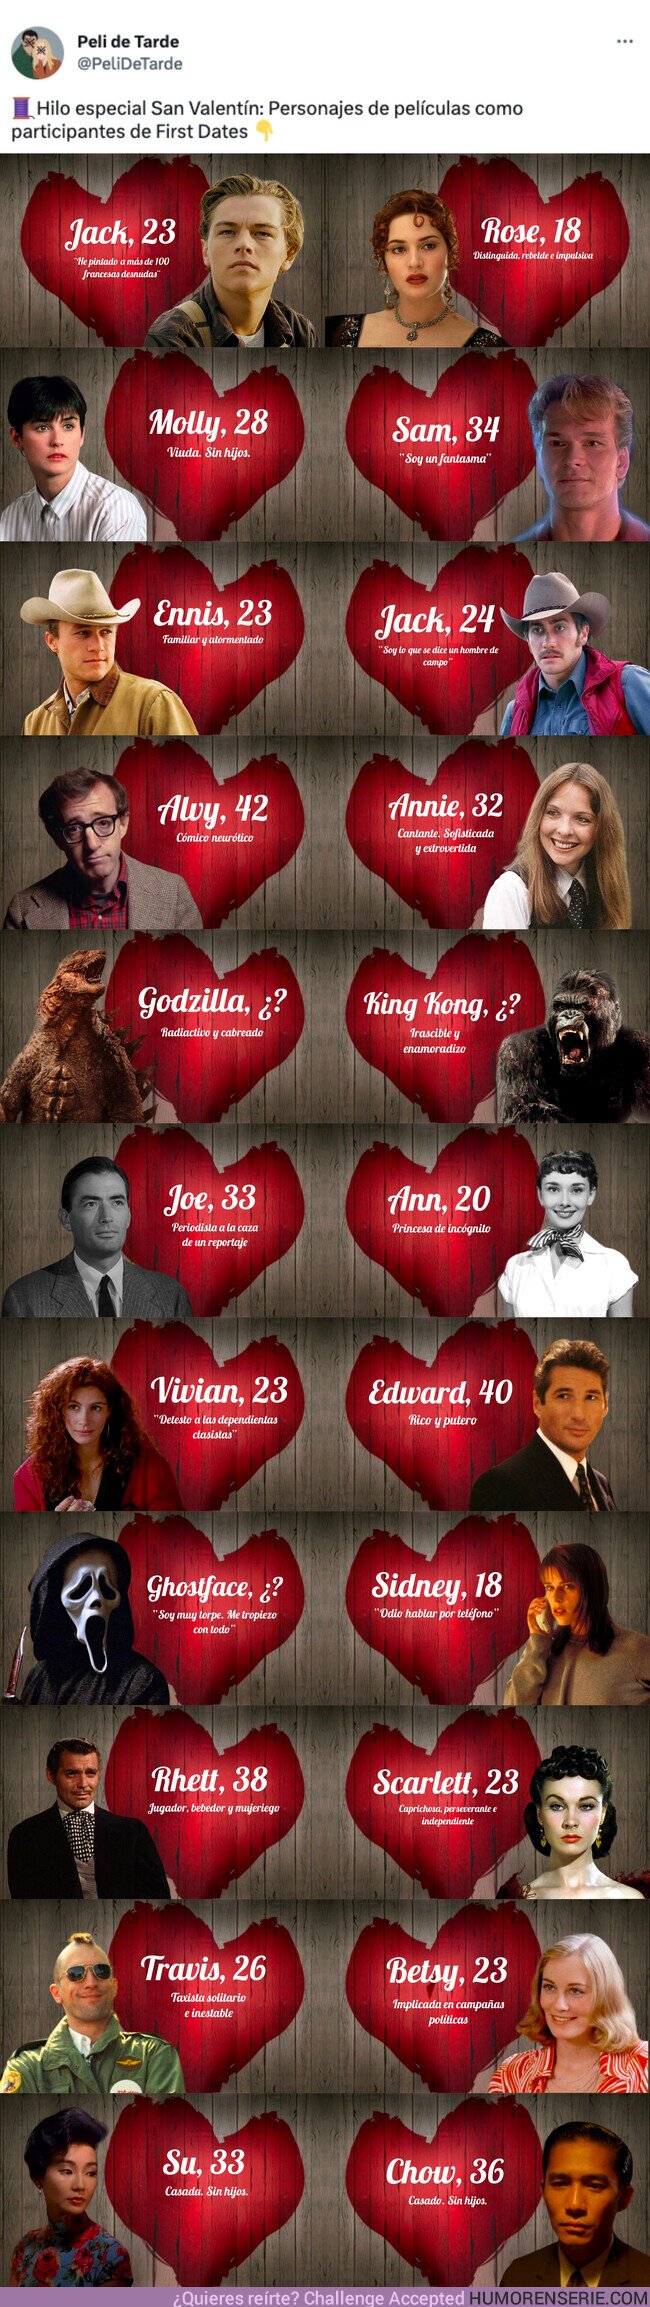 119889 - GALERÍA: Hilo especial San Valentín: Personajes de películas como participantes de First Dates , por @PeliDeTarde